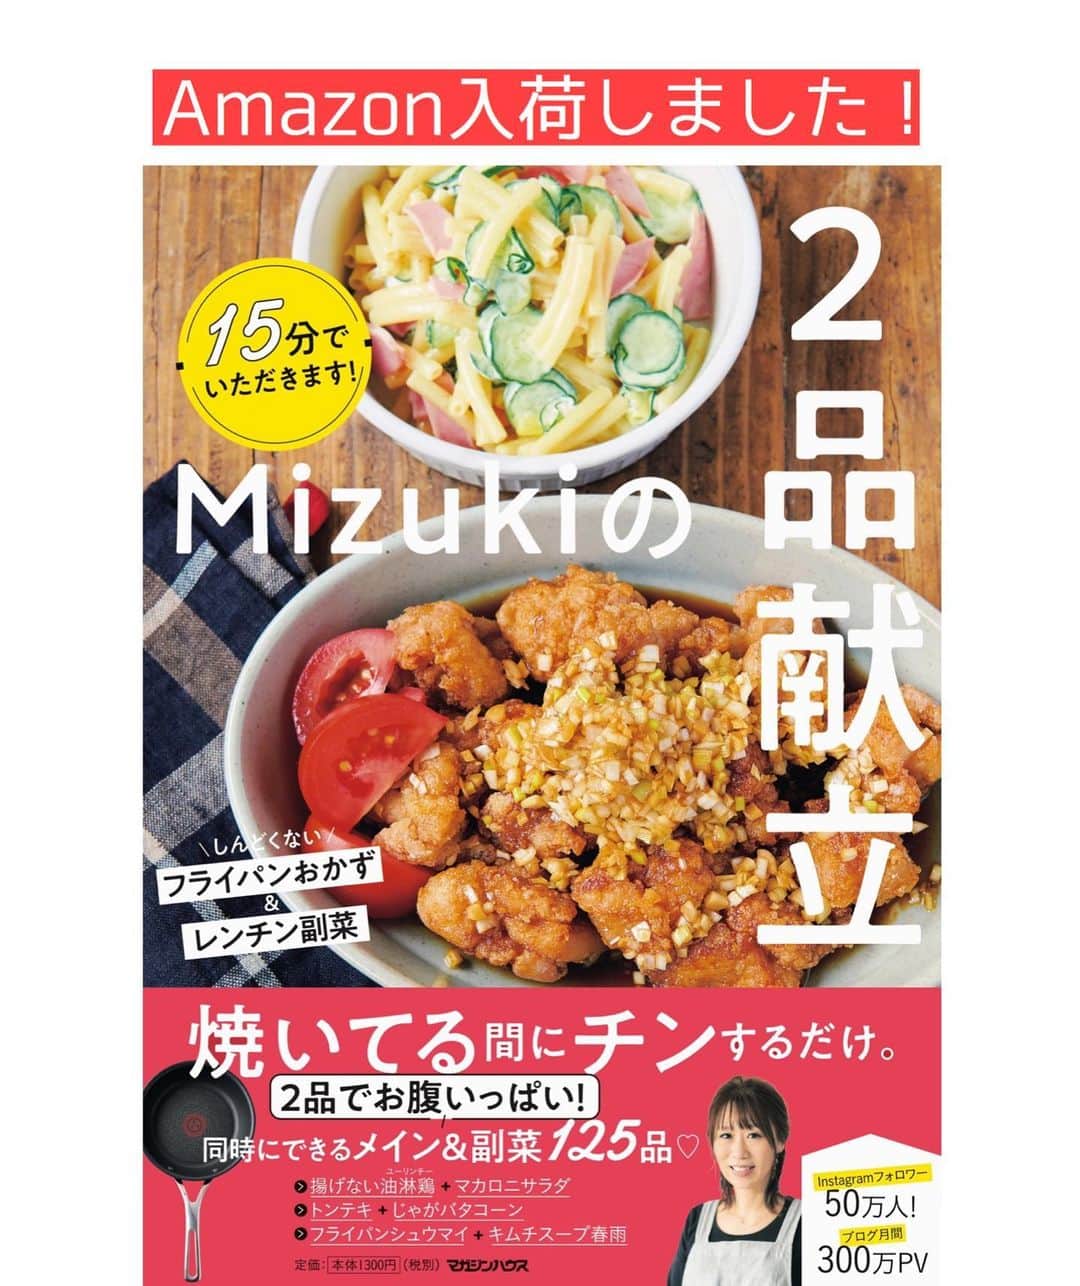 Mizuki【料理ブロガー・簡単レシピ】さんのインスタグラム写真 - (Mizuki【料理ブロガー・簡単レシピ】Instagram)「・﻿ 【#レシピ 】ーーーーーーーーーーー﻿ ♡揉んで焼くだけ♡﻿ 塩だれde超絶危険なやみつきチキン﻿ ーーーーーーーーーーーーーーーーー﻿ ﻿ 　﻿ ﻿ おはようございます(*^^*)﻿ ﻿ 今日ご紹介させていただくのは﻿ 久〜しぶりの #やみつきチキン ！﻿ 大好評だった塩だれ味を﻿ 7年振りに再掲載致します♩﻿ ﻿ 焼き鳥をイメージして作った﻿ やみつきチキン塩バージョン♡﻿ これ、おかずやおつまみ﻿ お弁当にもおすすめですよ〜♩﻿ ﻿ 作り方は超簡単(*´艸`)﻿ 揉んで焼くだけ！！﻿ カットした鶏肉に調味料を揉み込み﻿ 漬け込み無しオイル無しで焼くだけ♡﻿ ﻿ ﻿ ﻿ ＿＿＿＿＿＿＿＿＿＿＿＿＿＿＿＿＿＿＿＿﻿ 【2人分】﻿ 鶏もも肉...1枚(250g)﻿ ●鶏がらスープ・酒...各小1﻿ ●ごま油...大1/2﻿ ●にんにくチューブ...3cm﻿ ●塩こしょう...少々﻿ ﻿ 1.鶏肉を2cm大に切ってポリ袋に入れ、●を加えて50回揉む。﻿ 2.(油なしの)フライパンで両面焼いて火を通す。﻿ ￣￣￣￣￣￣￣￣￣￣￣￣￣￣￣￣￣￣￣￣﻿ ﻿ ﻿ ﻿ ﻿ 《ポイント》﻿ ♦︎火加減は弱めの中火〜中火で♩﻿ ♦︎やみつきチキンはコールドスタート(冷たいフライパンに食材を入れてから火にかける)が向いているお料理です♩﻿ ♦︎むね肉で作る場合は、全体をフォークで刺して1cm厚さの削ぎ切りにして下さい♩﻿ ♦︎［やみつきチキン］は2014年発のシリーズレシピです☺️﻿ ﻿ ﻿ ﻿ ﻿ ﻿ ﻿ 💬💬💬﻿ お約束のチョコテリーヌを﻿ YouTubeにアップしました🥰﻿ ストーリーやハイライトから飛べるので﻿ よかったらお試し下さいね💕﻿ (インスタライブ終盤で﻿ 唐突に登場したやつ(笑))﻿ 【YouTube】→🔍奇跡のキッチン🔍﻿ ﻿ ﻿ ﻿ ﻿ ﻿ ﻿ ＿＿＿＿＿＿＿＿＿＿＿＿＿＿＿＿＿＿﻿ 🎁器プレゼントキャンペーン実施中🎁﻿ ￣￣￣￣￣￣￣￣￣￣￣￣￣￣￣￣￣￣﻿ おかげざで［今どき和食］が10刷増版となりました✨﻿ そこで心ばかりですが感謝の気持ちをお伝えしたく﻿ 《器プレゼントキャンペーンを実施中です♩》﻿ ▼ ▼ ▼﻿ ＿＿＿＿＿＿＿＿＿﻿ 【プレゼント内容】﻿ ￣￣￣￣￣￣￣￣￣﻿ 今人気の波佐見焼 大皿1枚﻿ もしくは小皿2枚セットを15名様に﻿ ＿＿＿＿＿＿＿＿＿﻿ 【応募方法】﻿ ￣￣￣￣￣￣￣￣￣﻿ ❶［Mizukiの今どき和食］から﻿ 1品ご自身で作った料理画像、﻿ もしくはカバー(表紙)画像を準備。﻿ ❷［#Mizukiの今どき和食器プレゼント ］﻿ のタグを付けて投稿！﻿ (以上で応募完了です😊　2/14〆切)﻿ _________________________________﻿ ﻿ 　﻿ ﻿ ﻿ ﻿ ﻿ ⭐️発売中⭐️﻿ ＿＿＿＿＿＿＿＿＿＿＿＿＿＿＿＿＿＿﻿ ホケミレシピの決定版♩﻿ \はじめてでも失敗しない/﻿ 📙#ホットケーキミックスのお菓子 📙﻿ ﻿ NHKまる得マガジンテキスト☆﻿ ホットケーキミックスで﻿ 📗絶品おやつ&意外なランチ📗﻿ ﻿ しんどくない献立、考えました♩﻿ \15分でいただきます/﻿ 📕#Mizukiの2品献立 📕﻿ ﻿ 和食をもっとカジュアルに♩﻿ \毎日のごはんがラクになる/﻿ 📘Mizukiの今どき和食 📘﻿ ﻿ 重版しました！﻿ ありがとうございます😭﻿ 📗ラクしておいしい！1品晩ごはん 📗﻿ ﻿ 摂食障害から料理研究家になるまでを綴った﻿ はじめてのエッセイ本﻿ 📙普通のおいしいをつくるひと 📙﻿ ￣￣￣￣￣￣￣￣￣￣￣￣￣￣￣￣￣￣￣﻿ ﻿ ﻿ ﻿ ﻿ ﻿ ＿＿＿＿＿＿＿＿＿＿＿＿＿＿＿＿＿＿﻿ レシピを作って下さった際や﻿ レシピ本についてのご投稿には﻿ タグ付け( @mizuki_31cafe )して﻿ お知らせいただけると嬉しいです😊💕﻿ ￣￣￣￣￣￣￣￣￣￣￣￣￣￣￣￣￣￣﻿ ﻿ ﻿ ﻿ ﻿ ﻿ #鶏肉#やみちき#揉んで焼くだけ#やみつきチキンシリーズ#塩だれ#Mizuki#簡単レシピ#時短レシピ#節約レシピ#料理#フーディーテーブル#マカロニメイト#おうちごはん#デリスタグラマー#料理好きな人と繋がりたい#おうちごはんlover#写真好きな人と繋がりたい#foodpic#cooking#recipe#lin_stagrammer#foodporn#yummy#f52grams#塩だれやみつきチキンm」2月11日 7時54分 - mizuki_31cafe